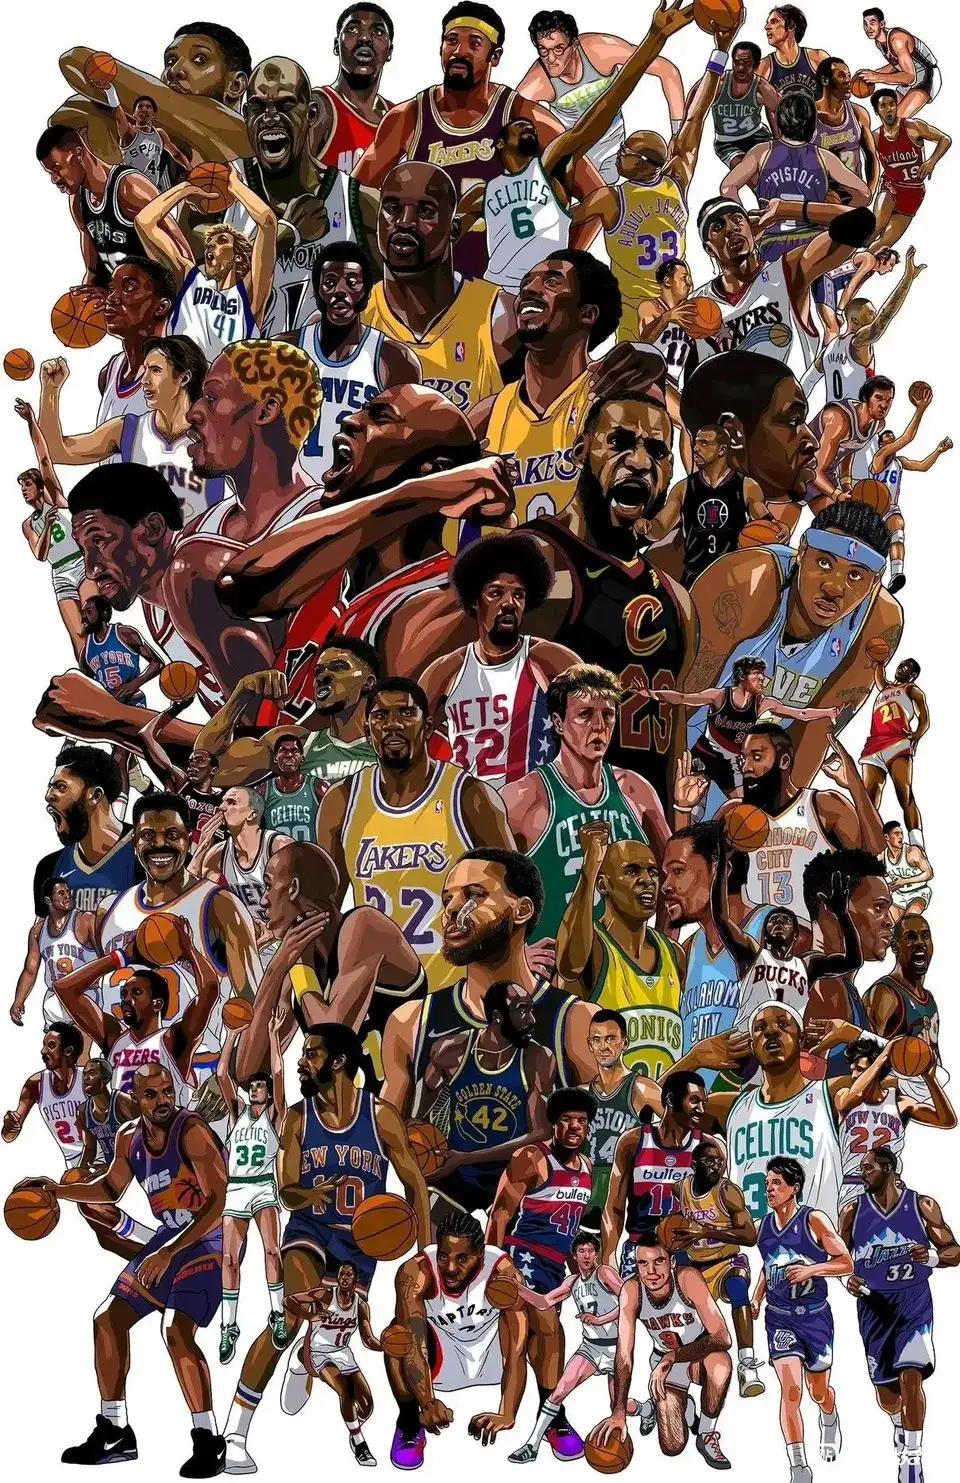 NBA75大巨星海报，谁在中间谁的历史地位高。

乔丹，詹姆斯最大，最中间。

(1)